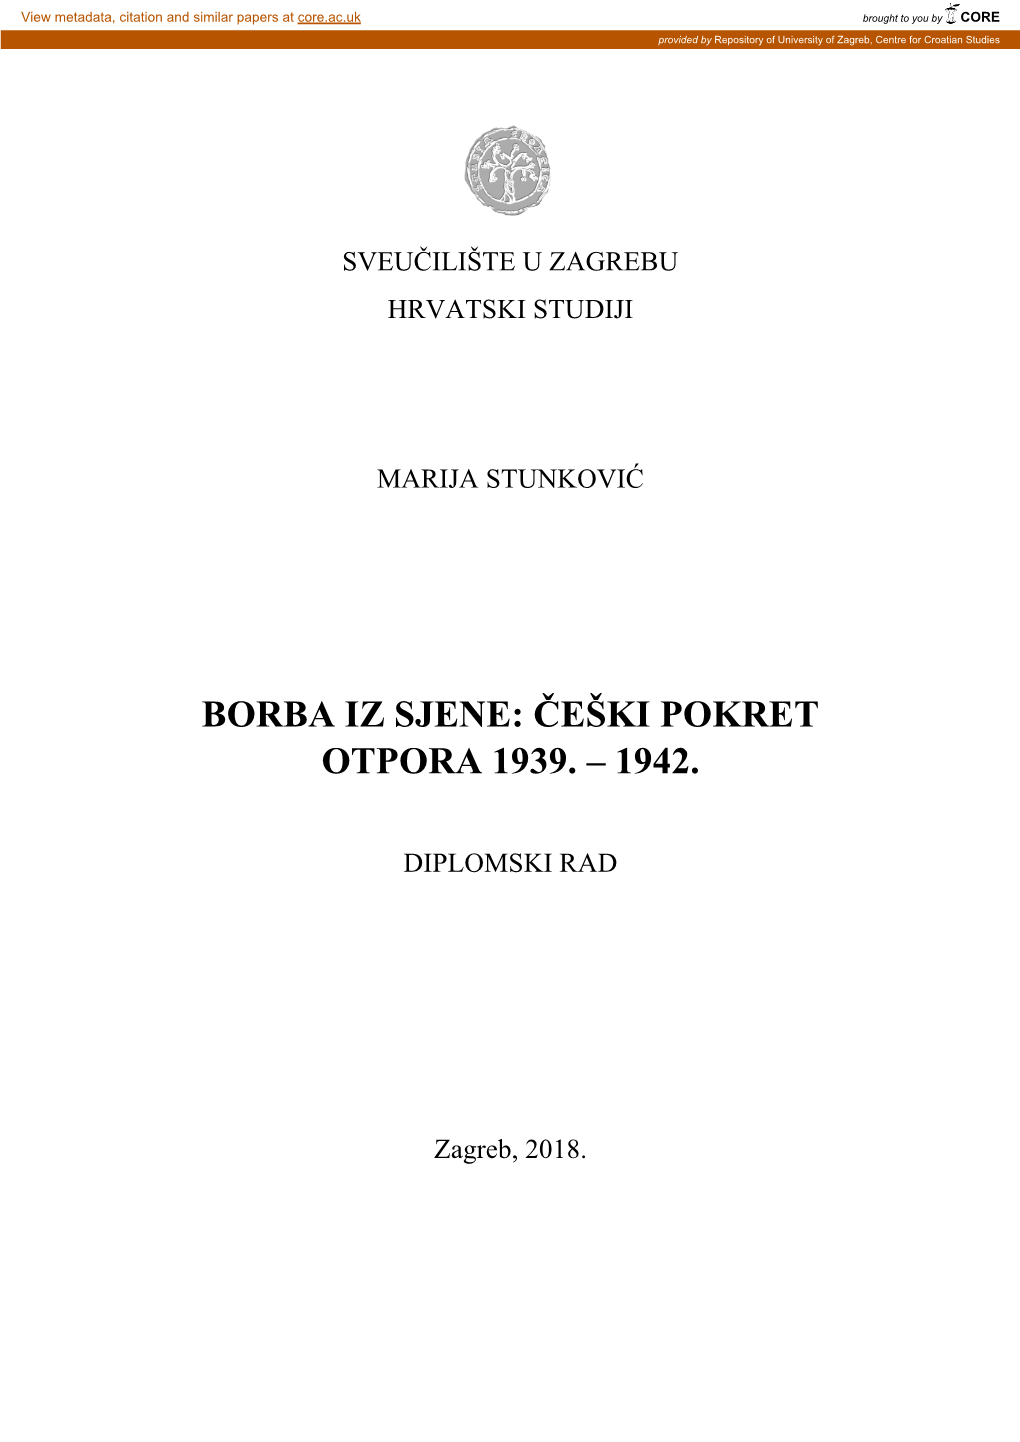 Borba Iz Sjene: Češki Pokret Otpora 1939. – 1942